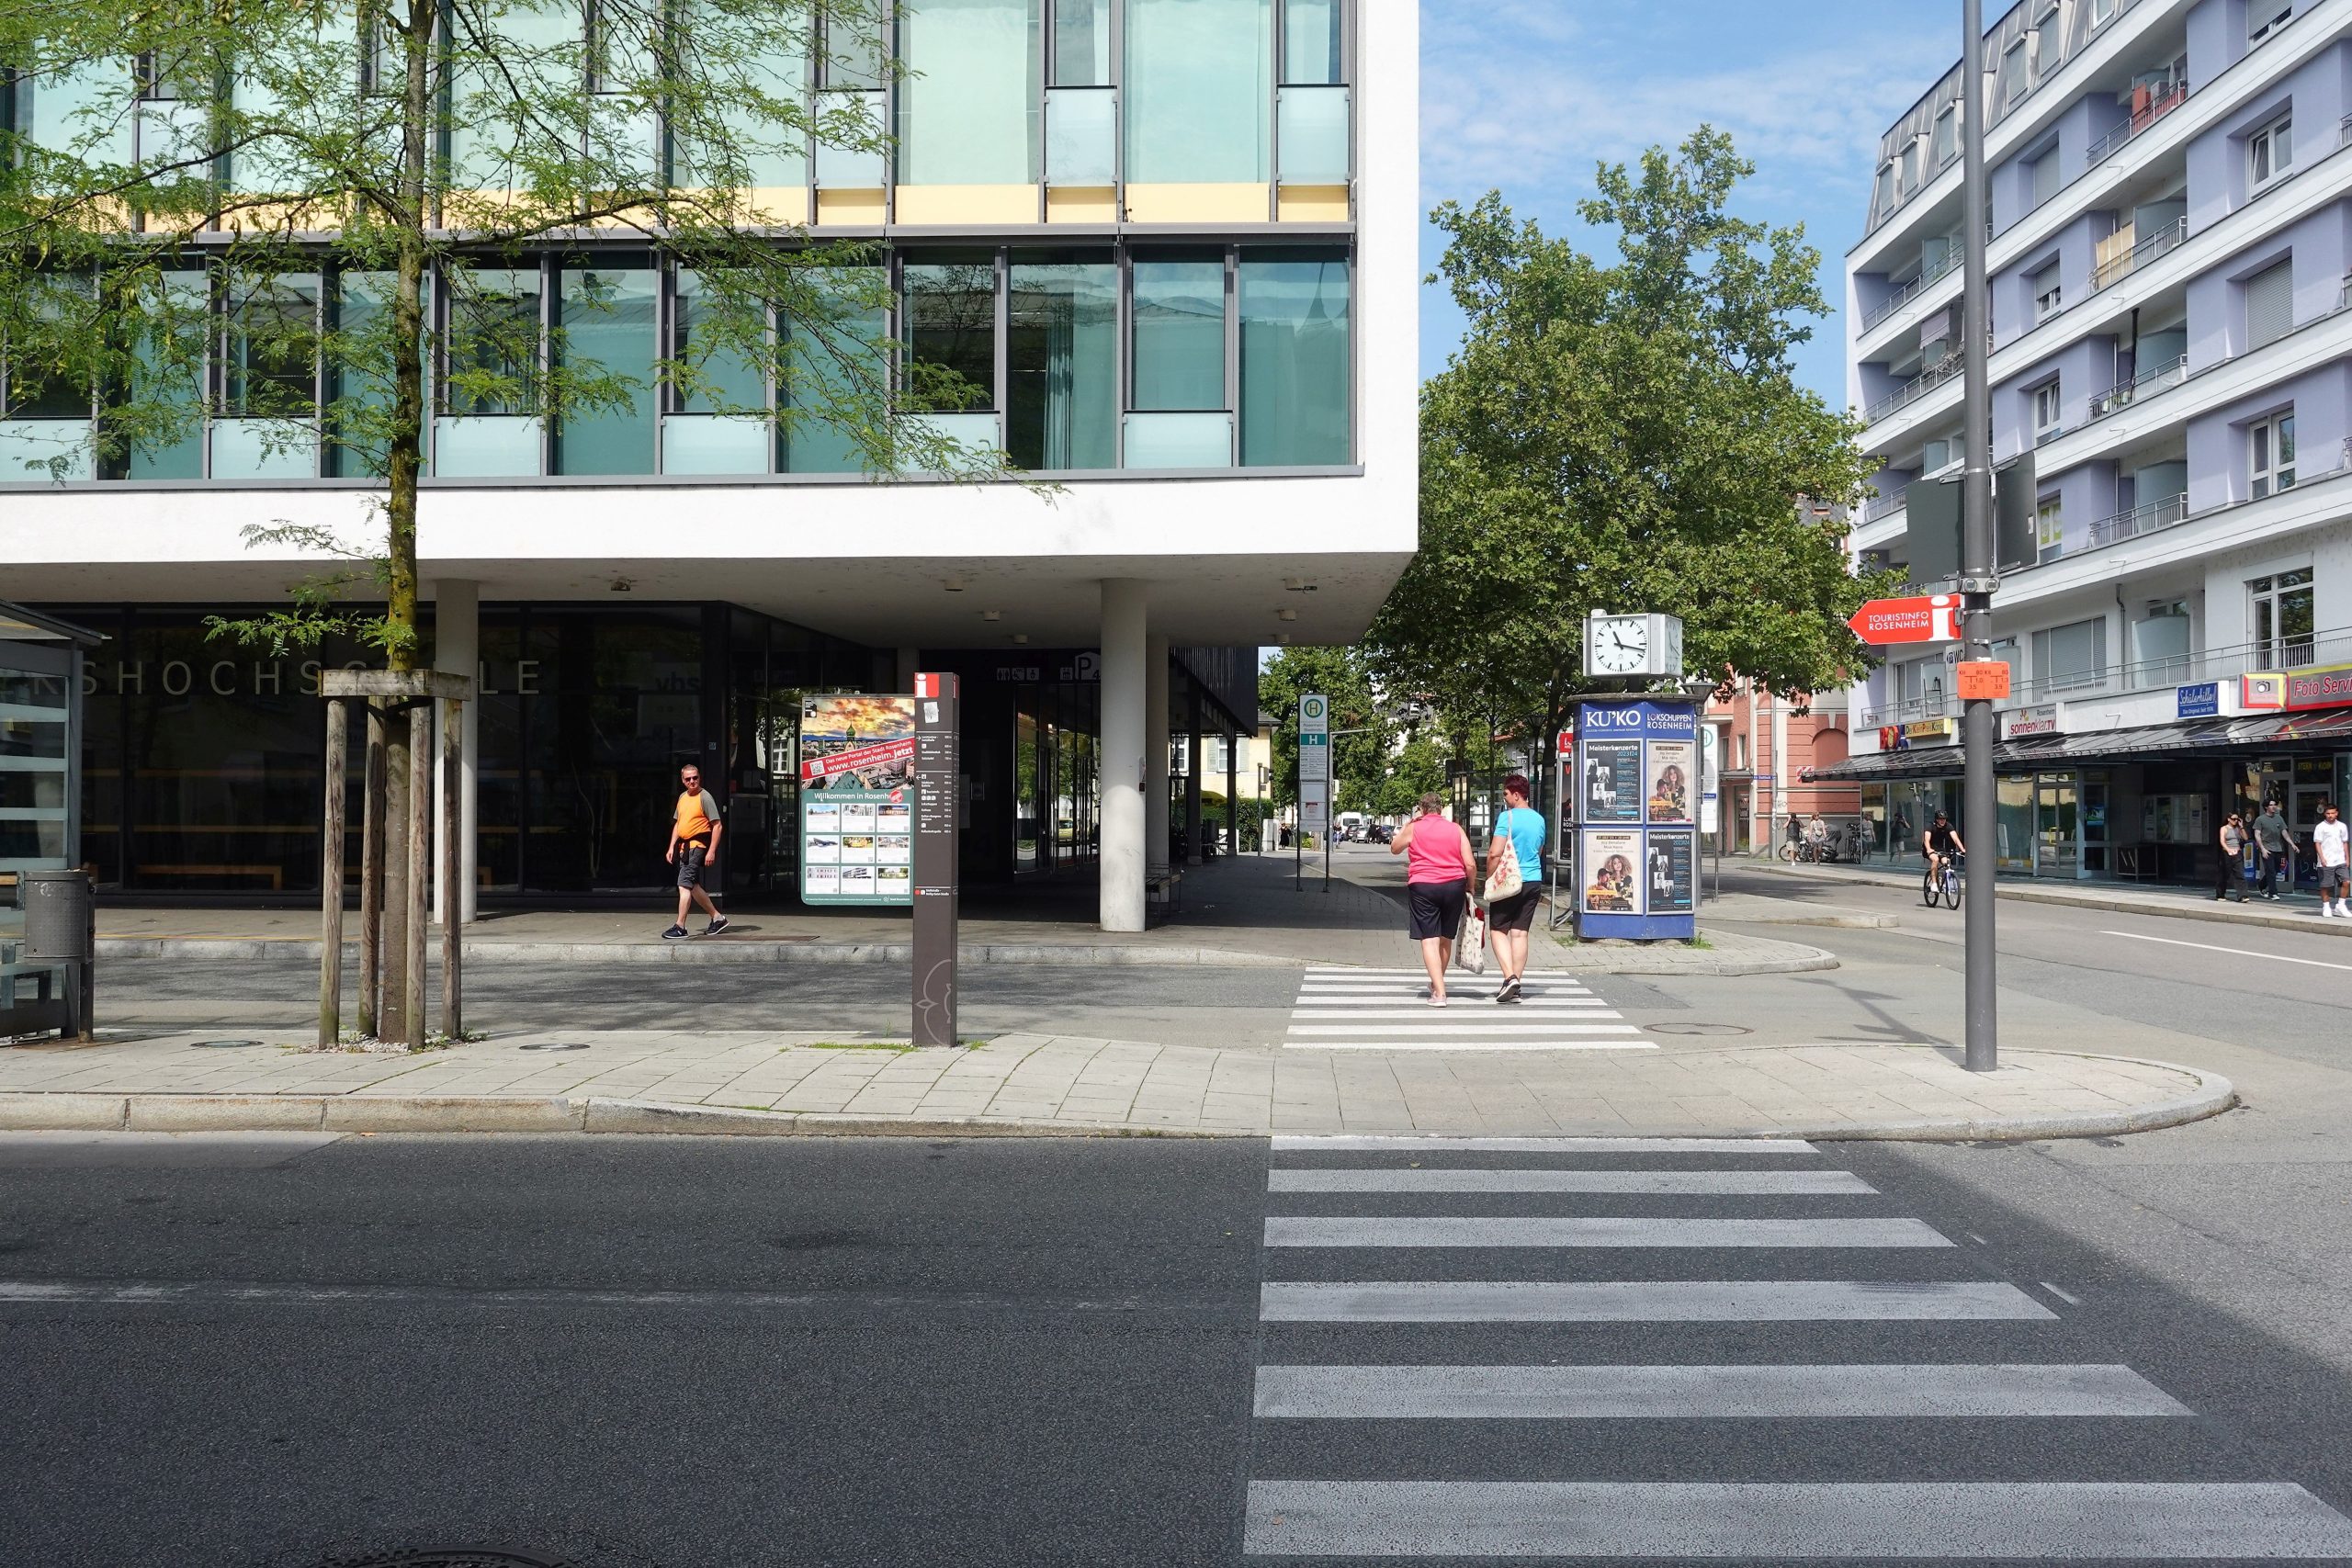 Neuer Zebrastreifen in der Stollstraße in Rosenheim. Foto: Innpuls.me